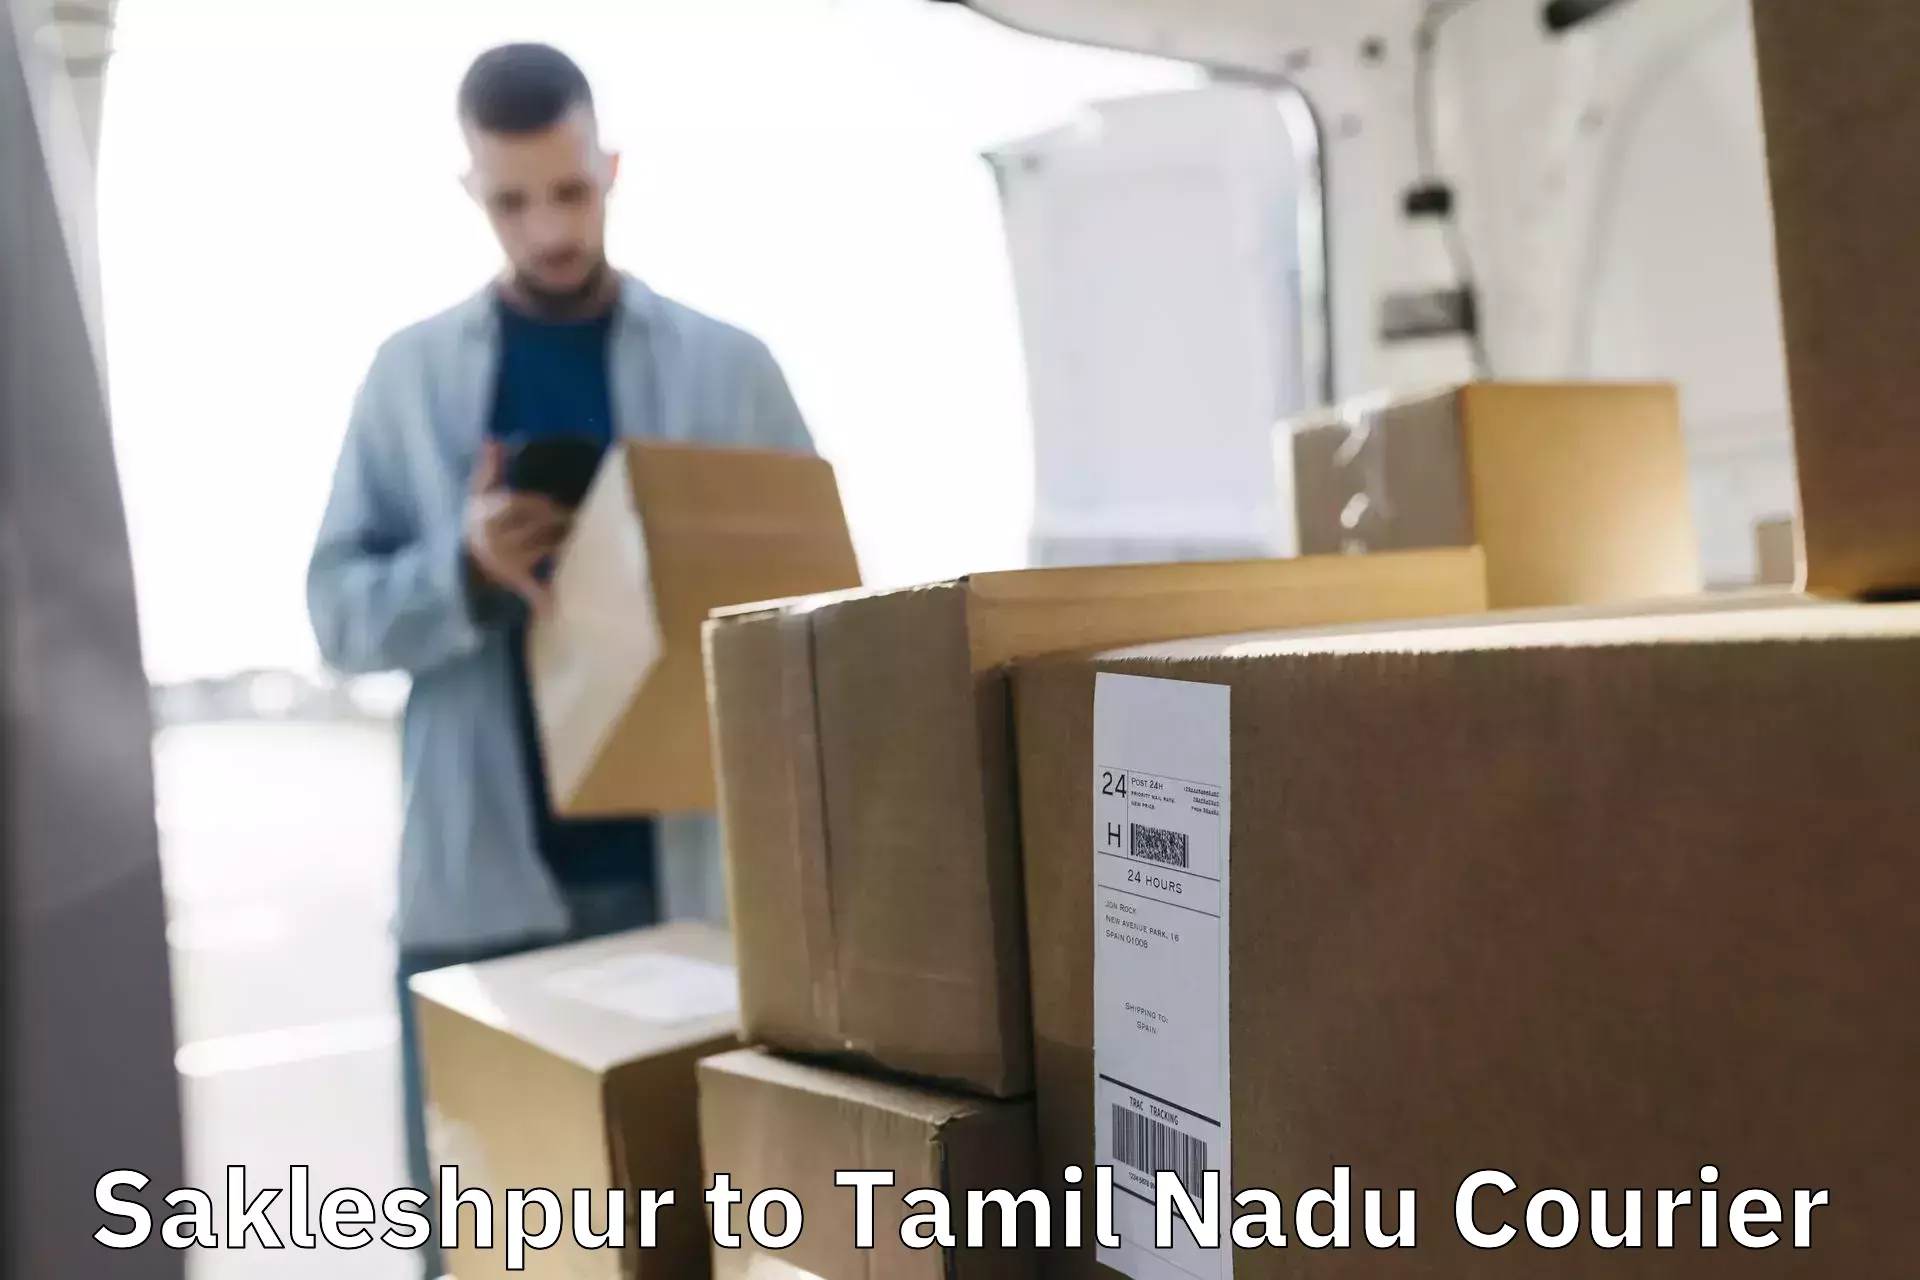 High-capacity parcel service Sakleshpur to Chennai Port